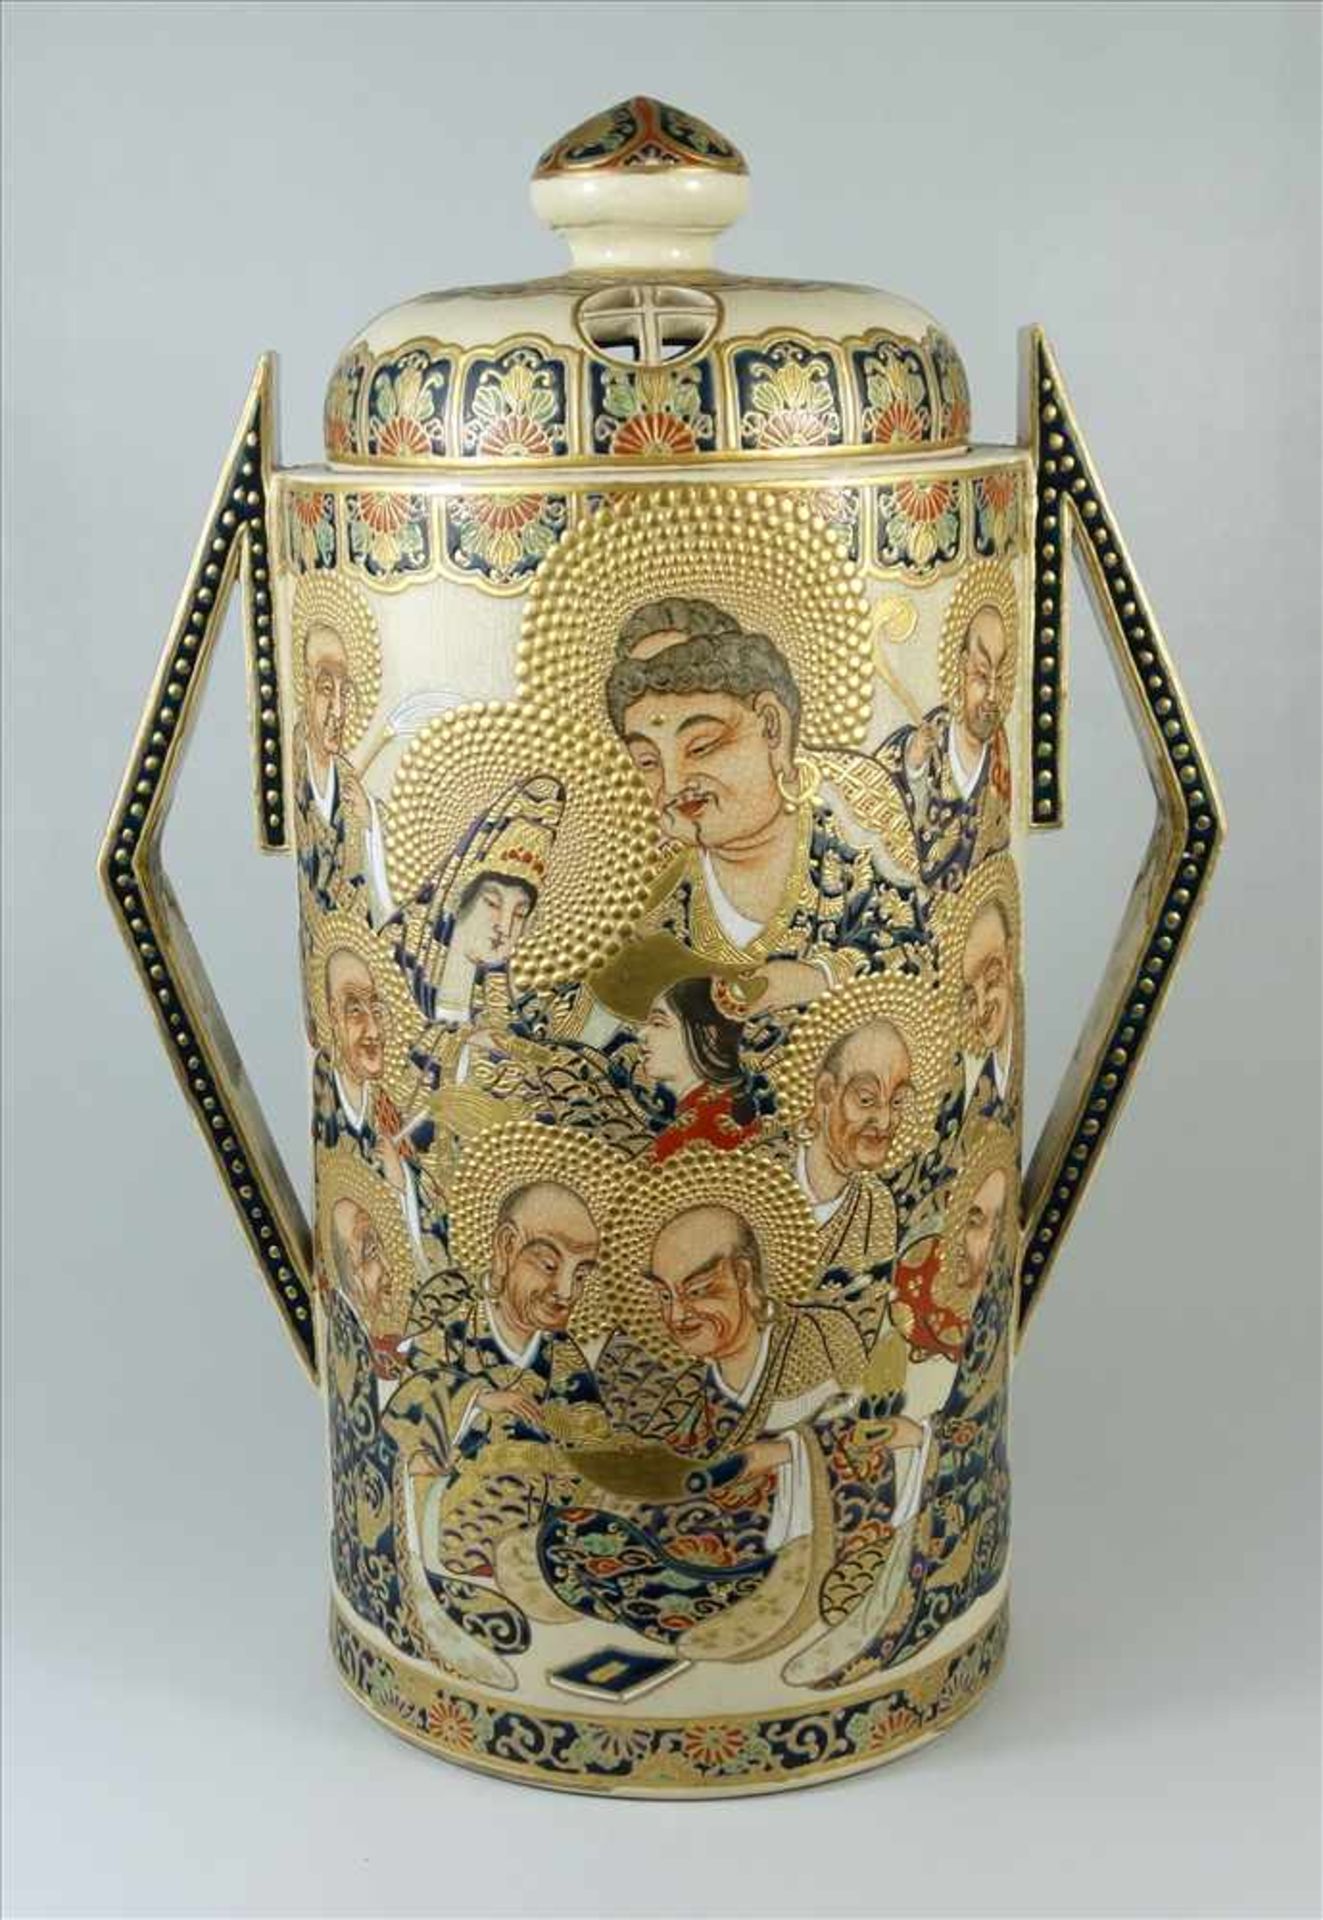 außergewöhnliches Satsuma- Deckelgefäß, Meji-Zeit, um 1900, Feinsteinzeug, zylindrischer Korpus